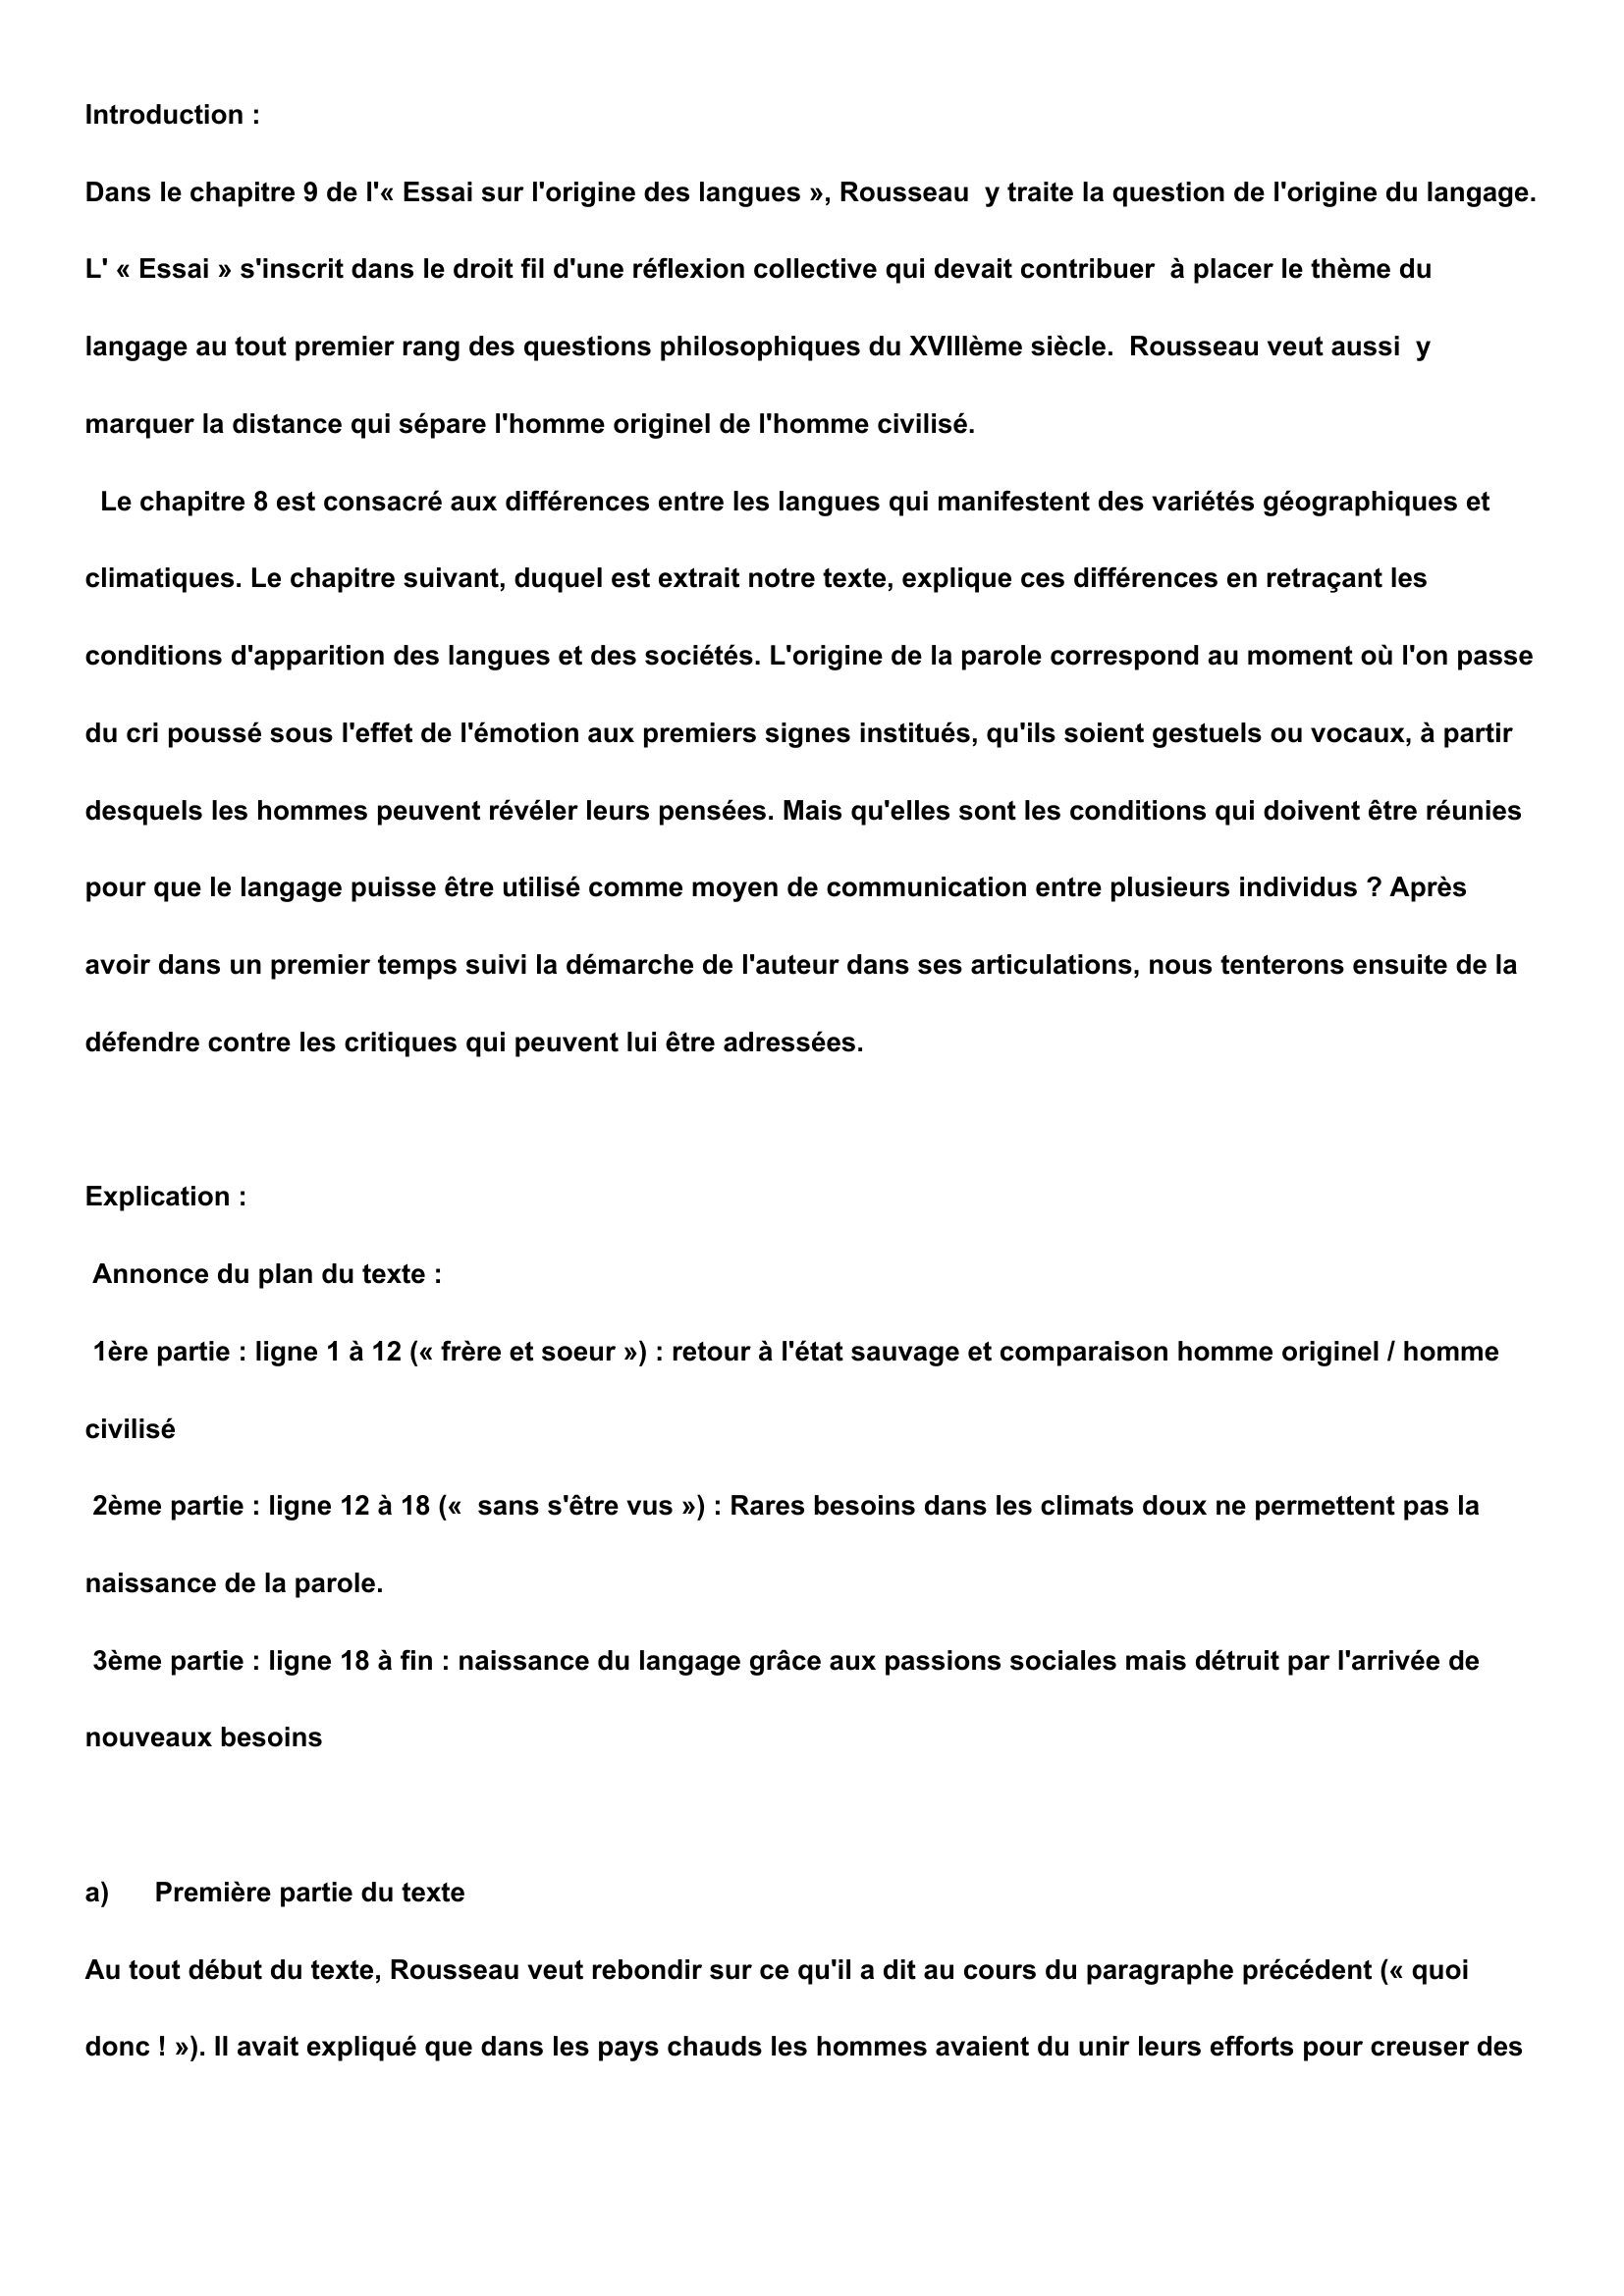 Prévisualisation du document commentaire de texte : "essai sur l'origine des langues" chap 9 Rousseau